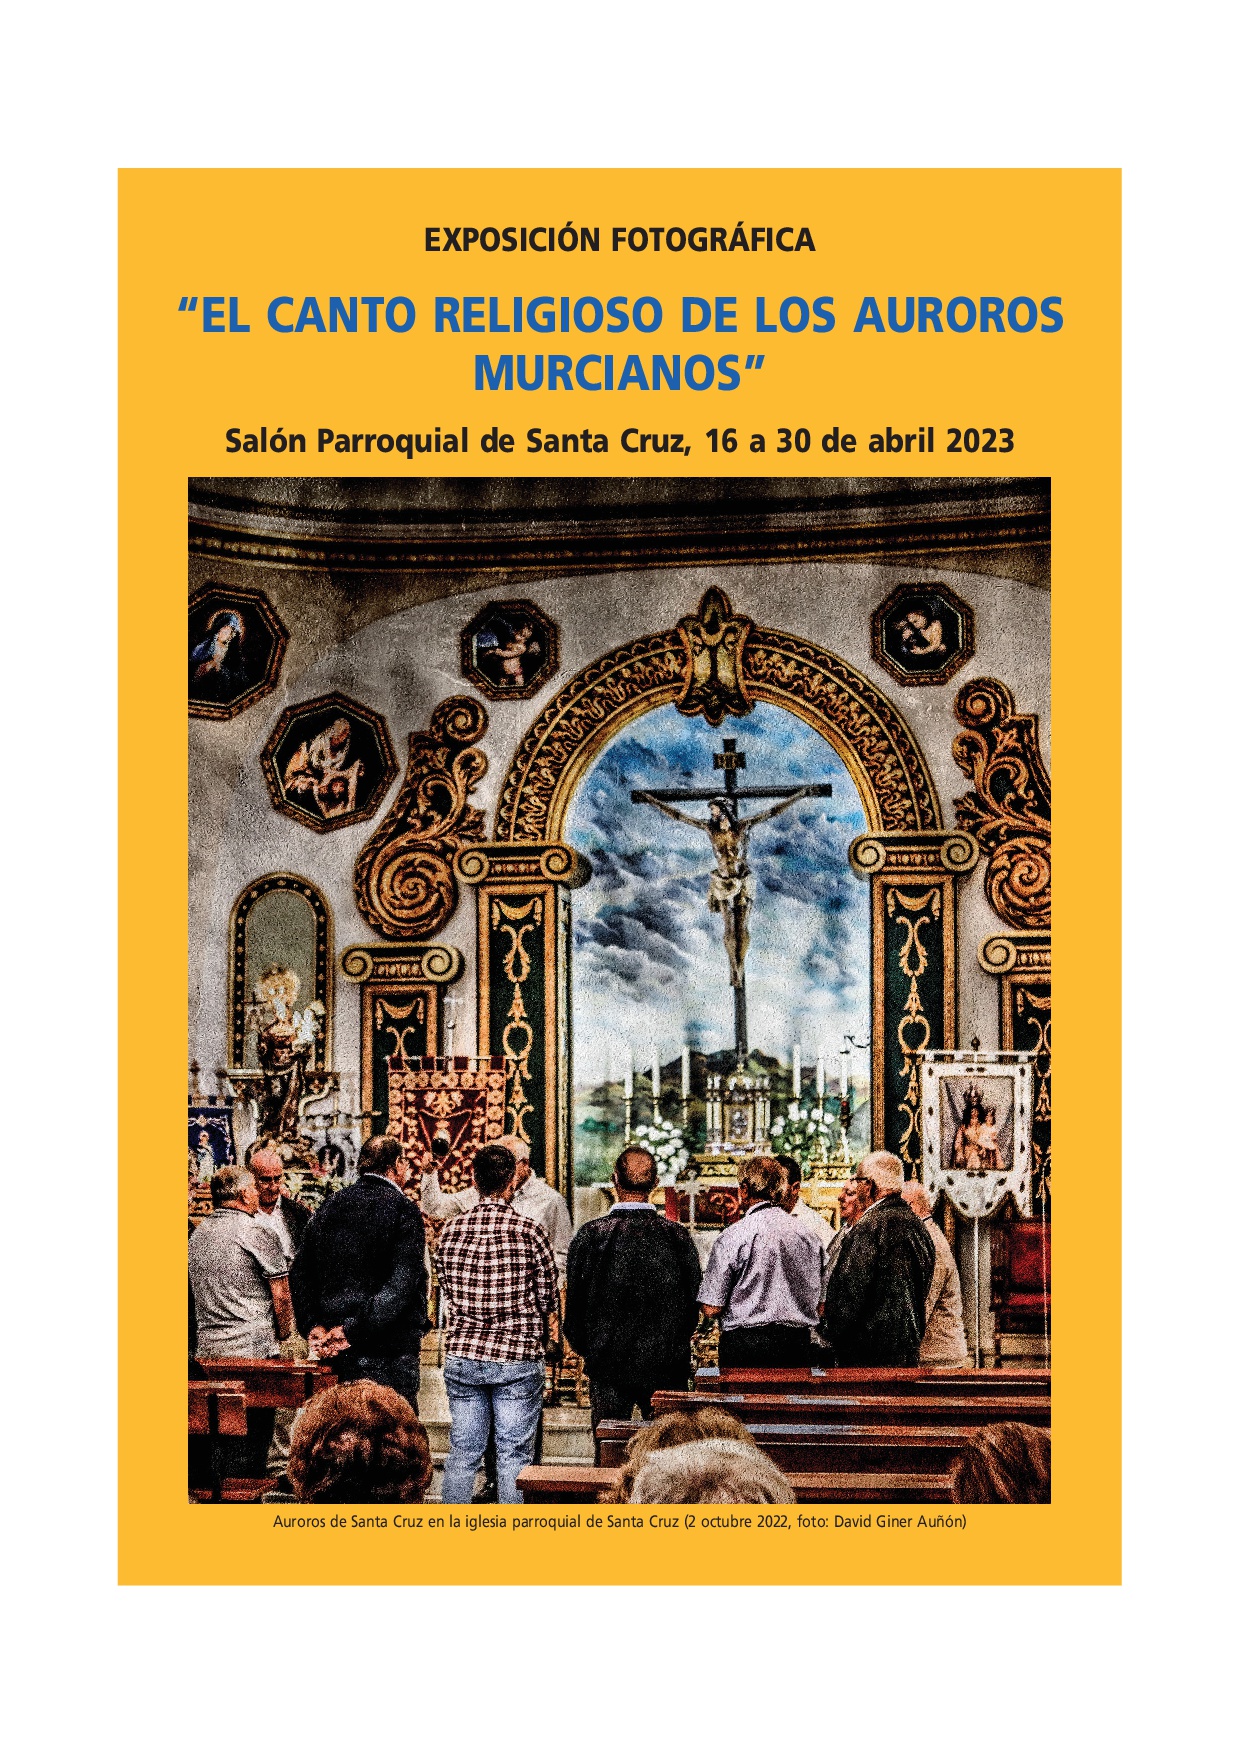 EXPOSICIÓN FOTOGRÁFICA “EL CANTO RELIGIOSO DE LOS AUROROS MURCIANOS”